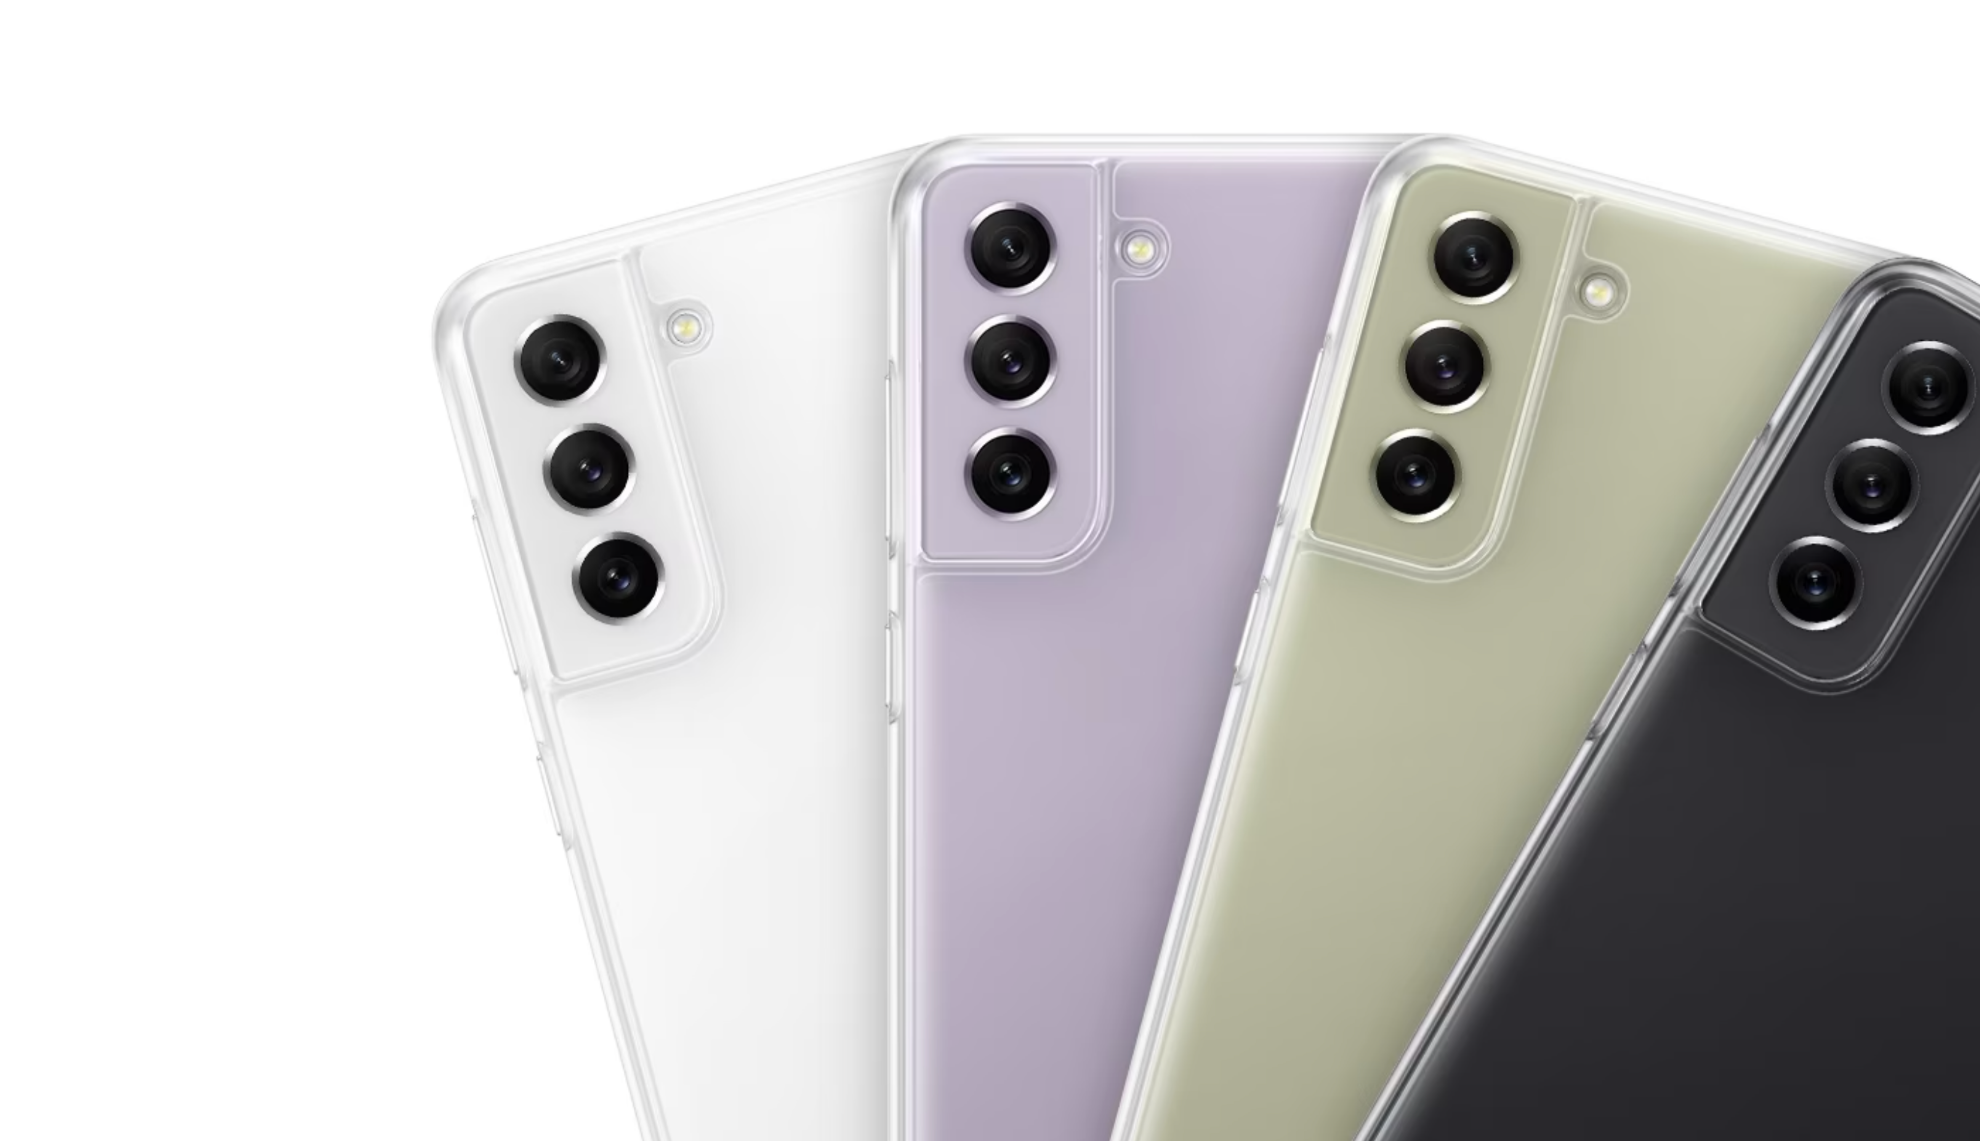 Bốn điện thoại Galaxy S21 FE 5G, tất cả đều được nhìn từ phía sau với Clear Cover được cài đặt để hiển thị vật liệu trong suốt giúp hiển thị màu sắc của điện thoại.